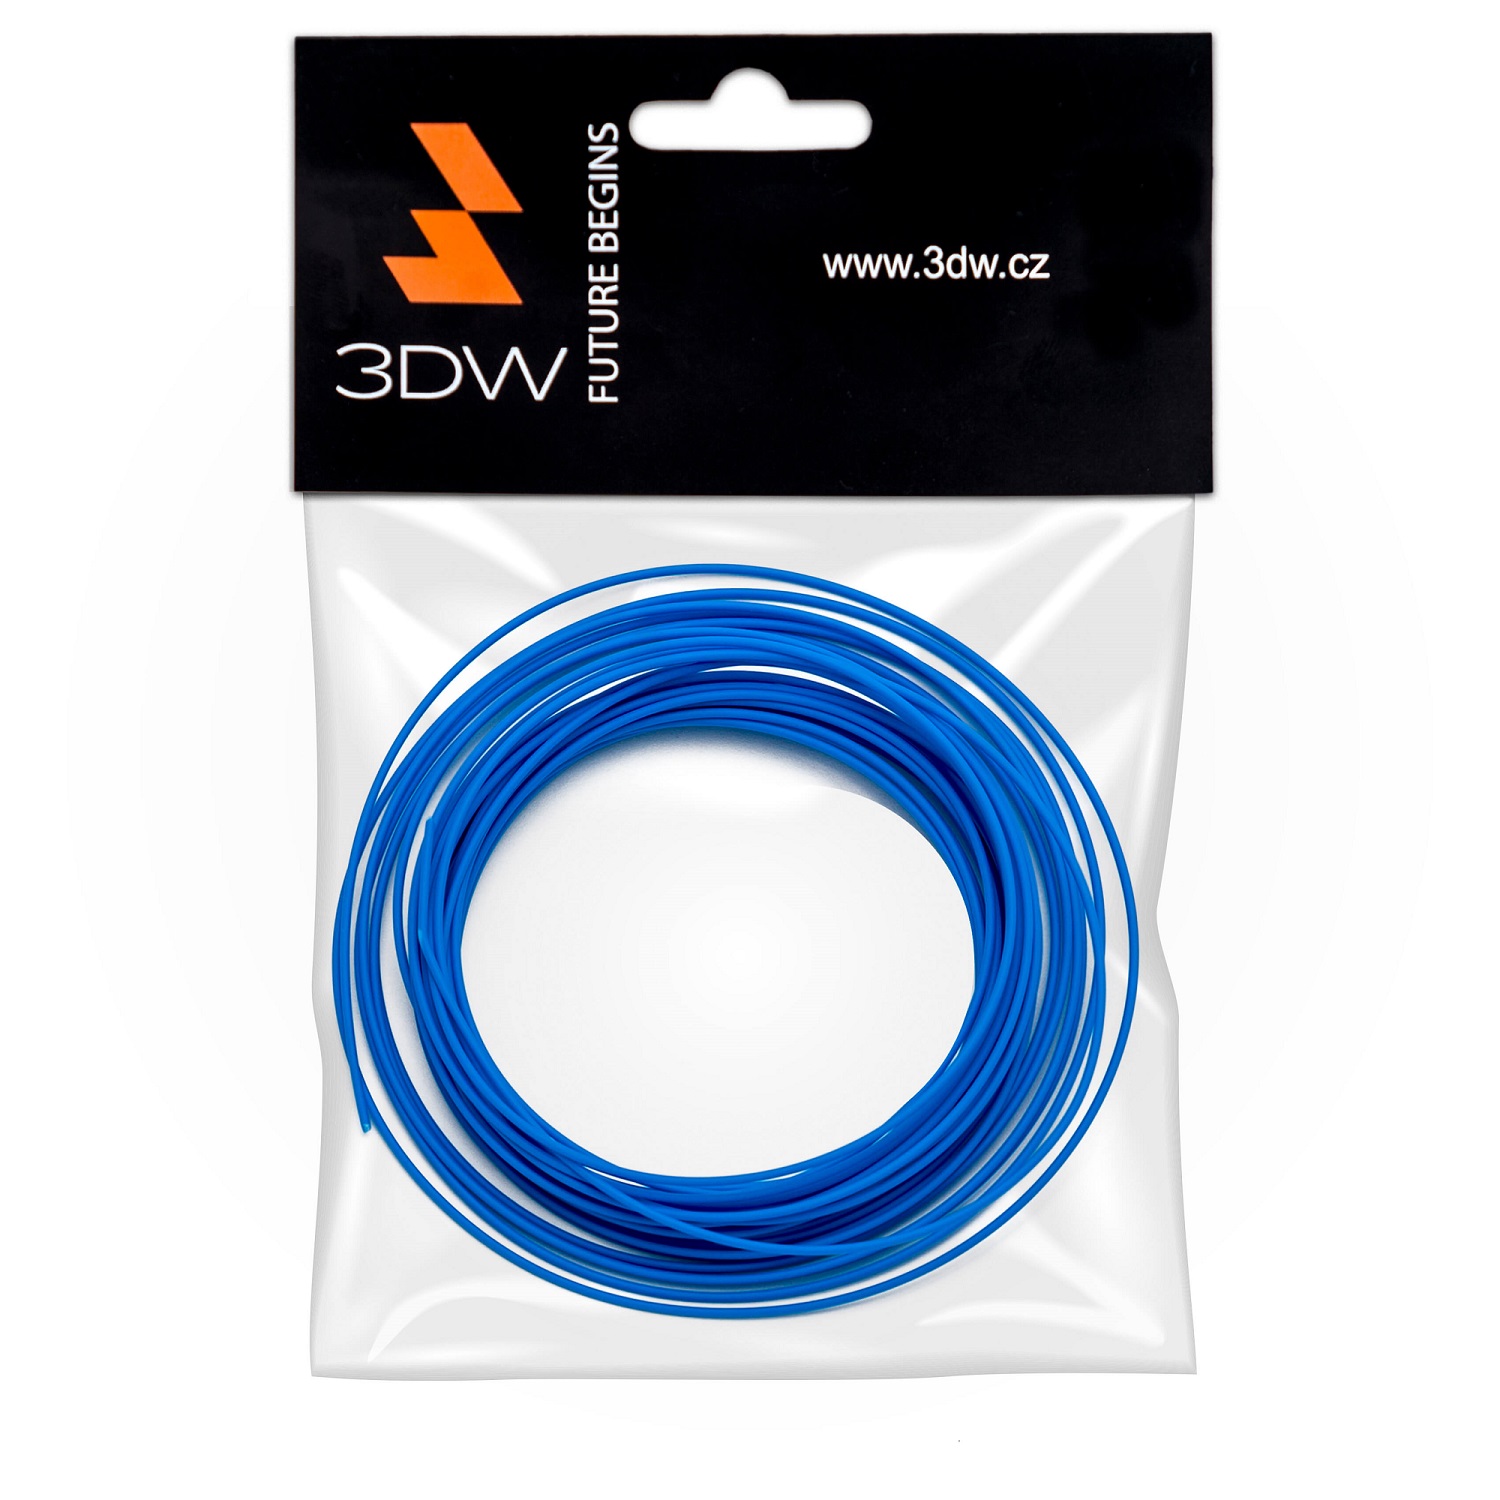 Tisková struna 3DW (filament) PLA, 1,75mm, 10m, modrá, 190-210°C